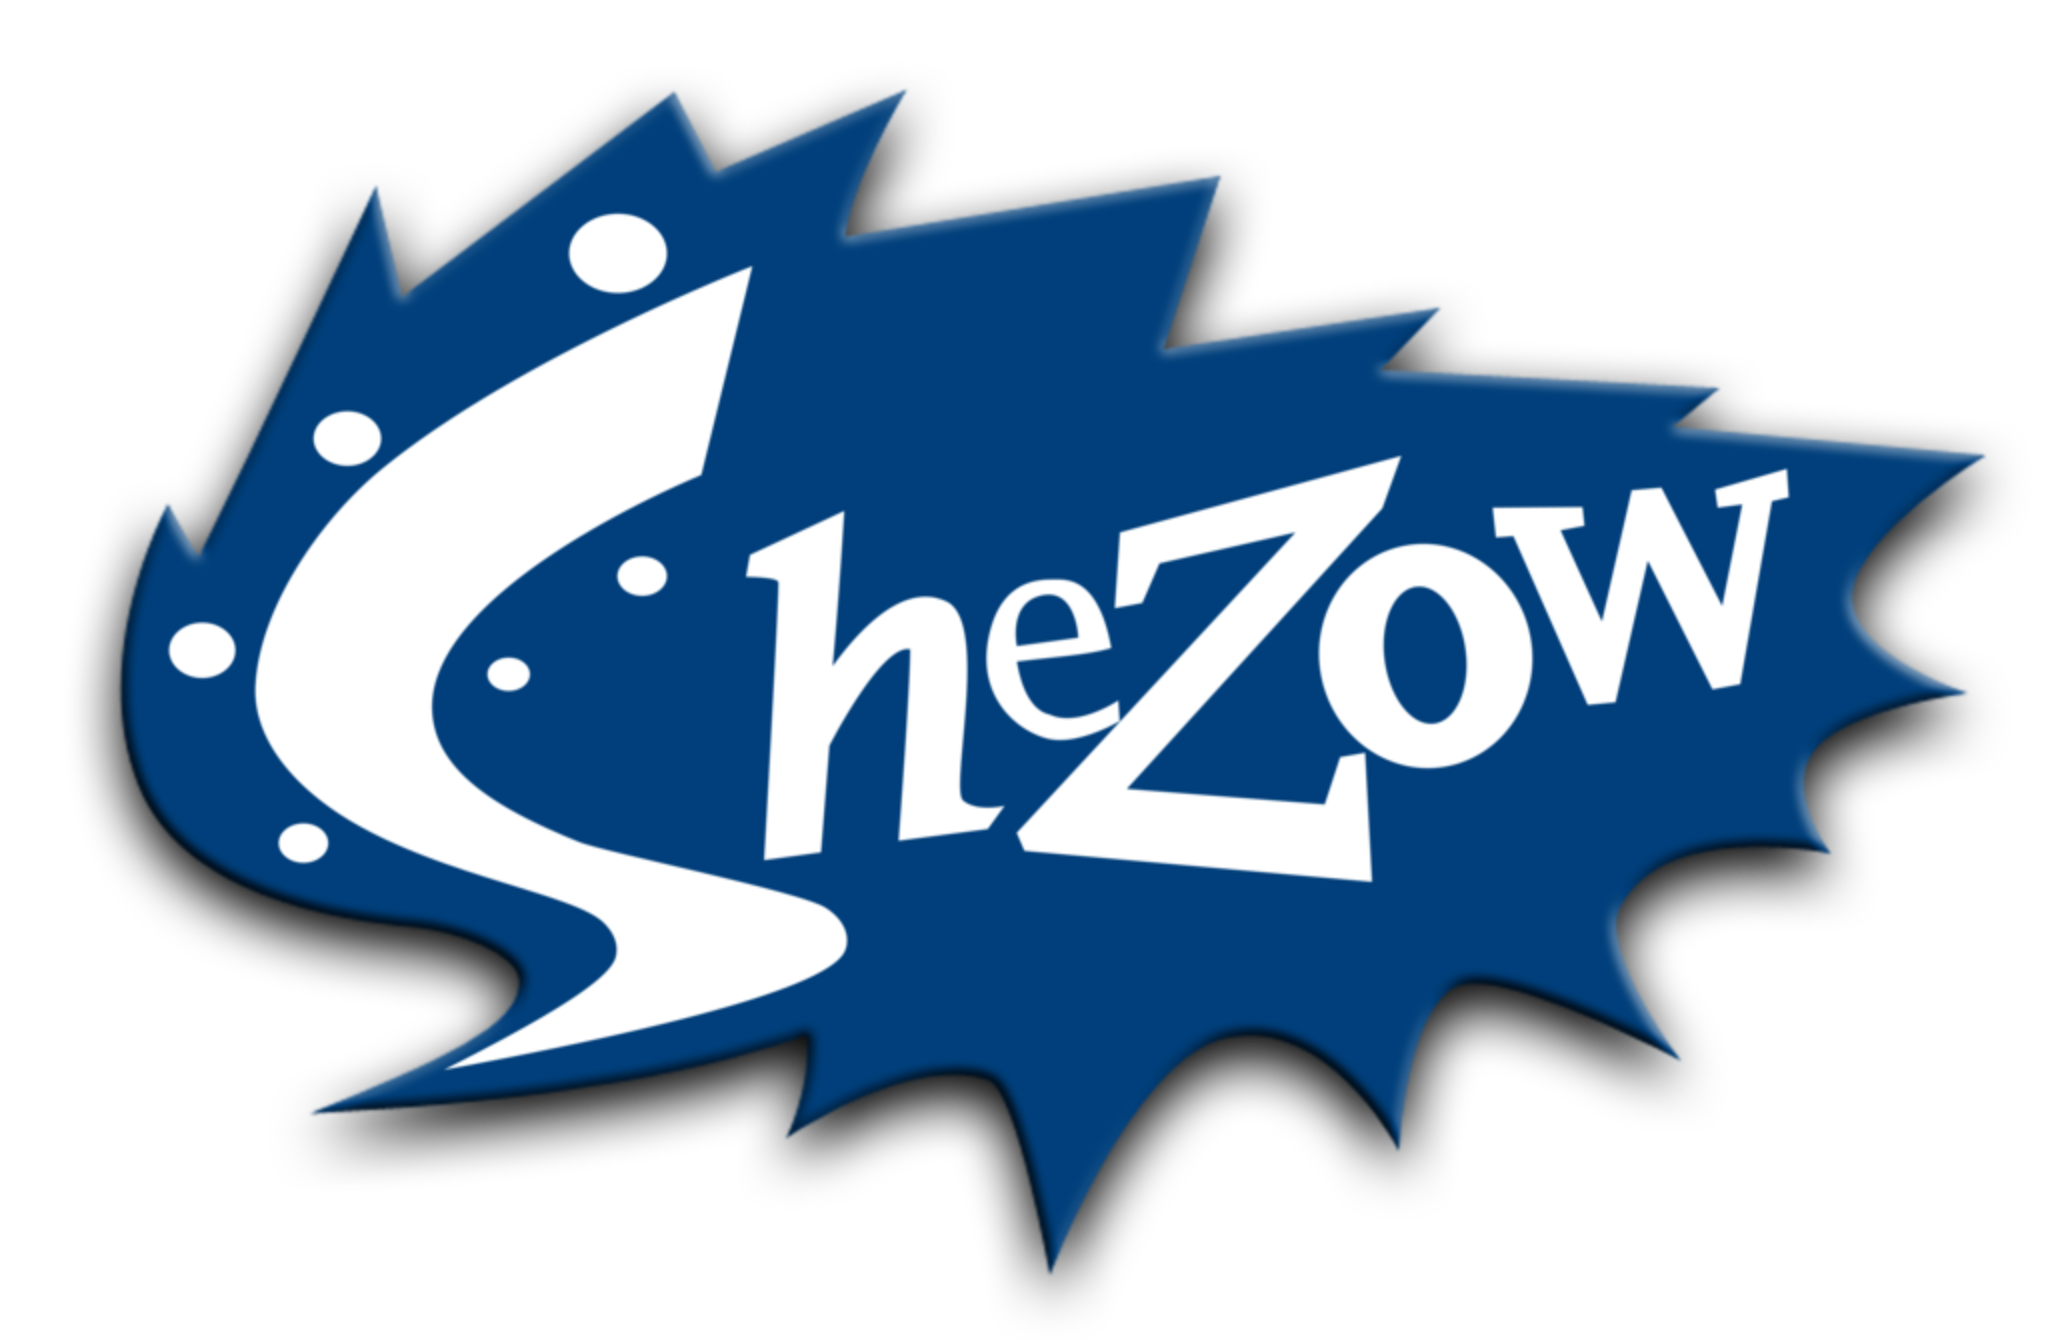 Shezow 